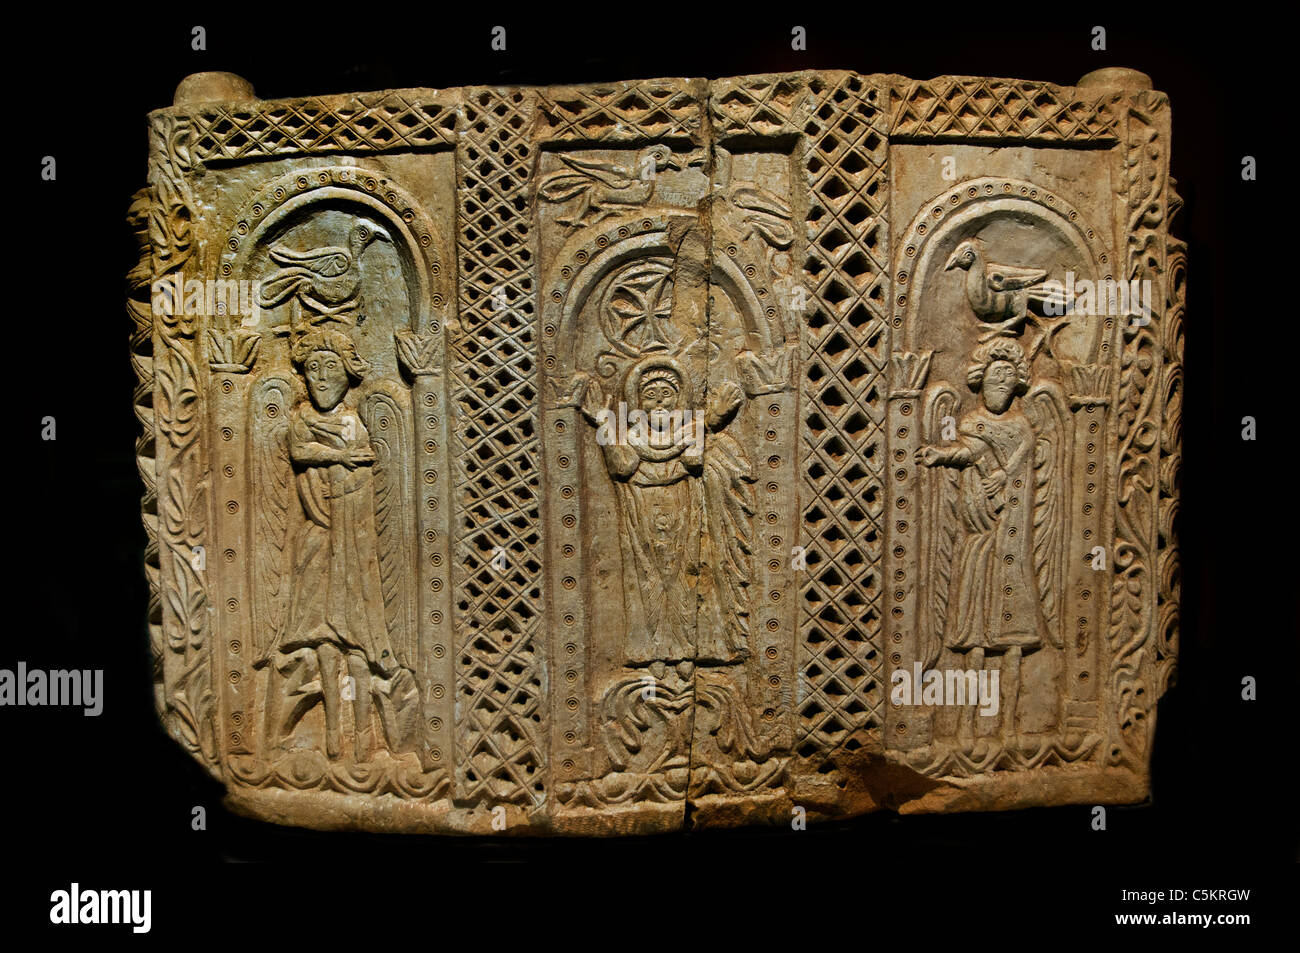 Ambo Brüstung von Elmali 4 byzantinische Periode 6 Cent AD Byzanz Türkei Stockfoto